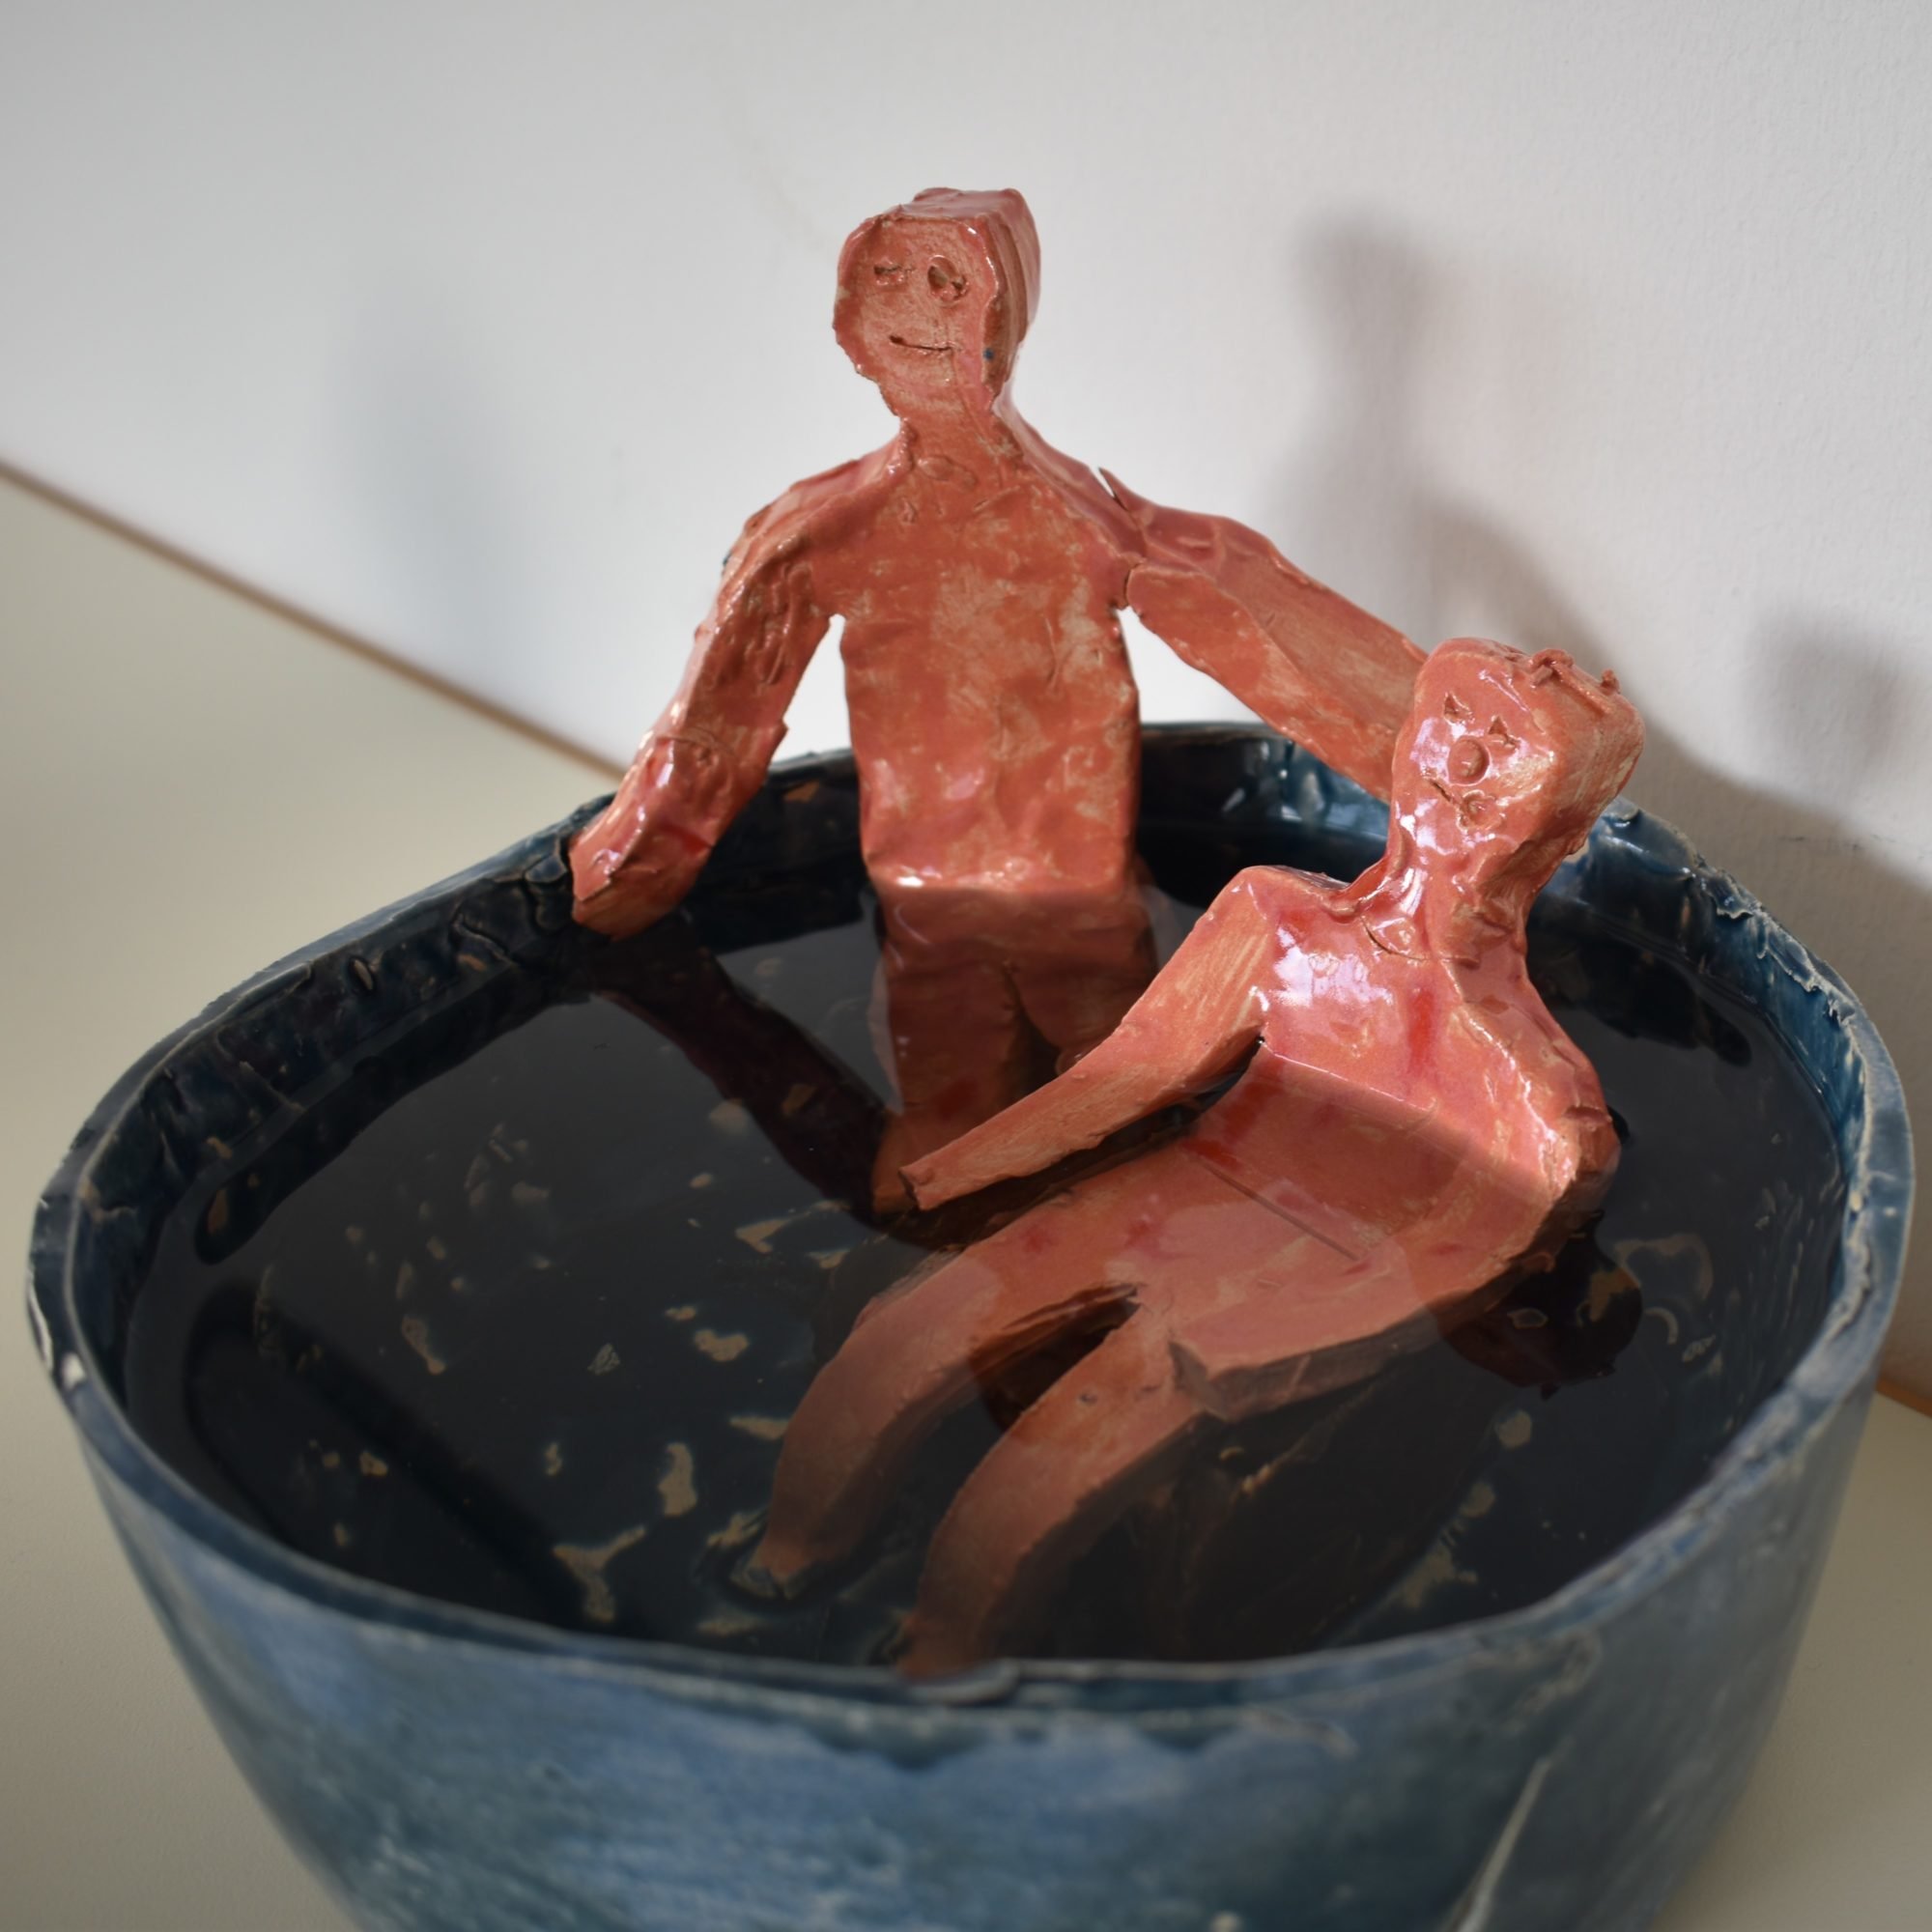 Zwei menschliche Gestalten aus Ton sitzen im Wasser in einer Schüssel aus Stein.